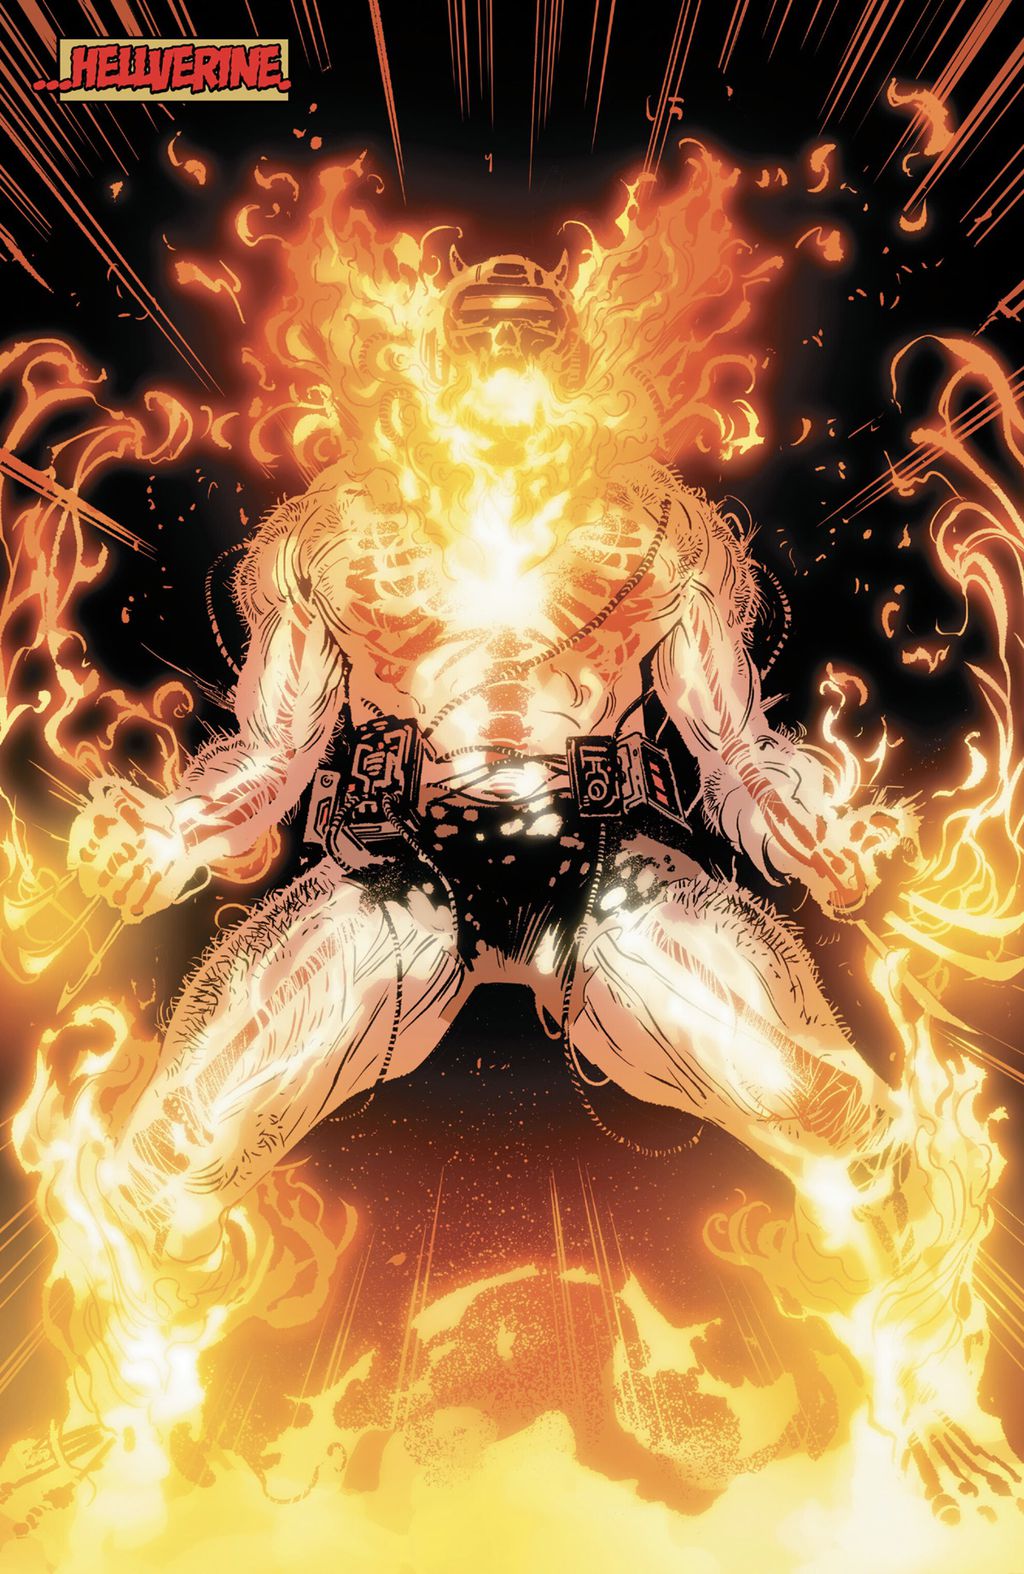 Bagra-ghul assume o controle de sua mente e corpo, dando lugar a Hellverine, uma criatura imbuída com os poderes do Motoqueiro Fantasma e possuída por demônios (Imagem: Reprodução/Marvel Comics)